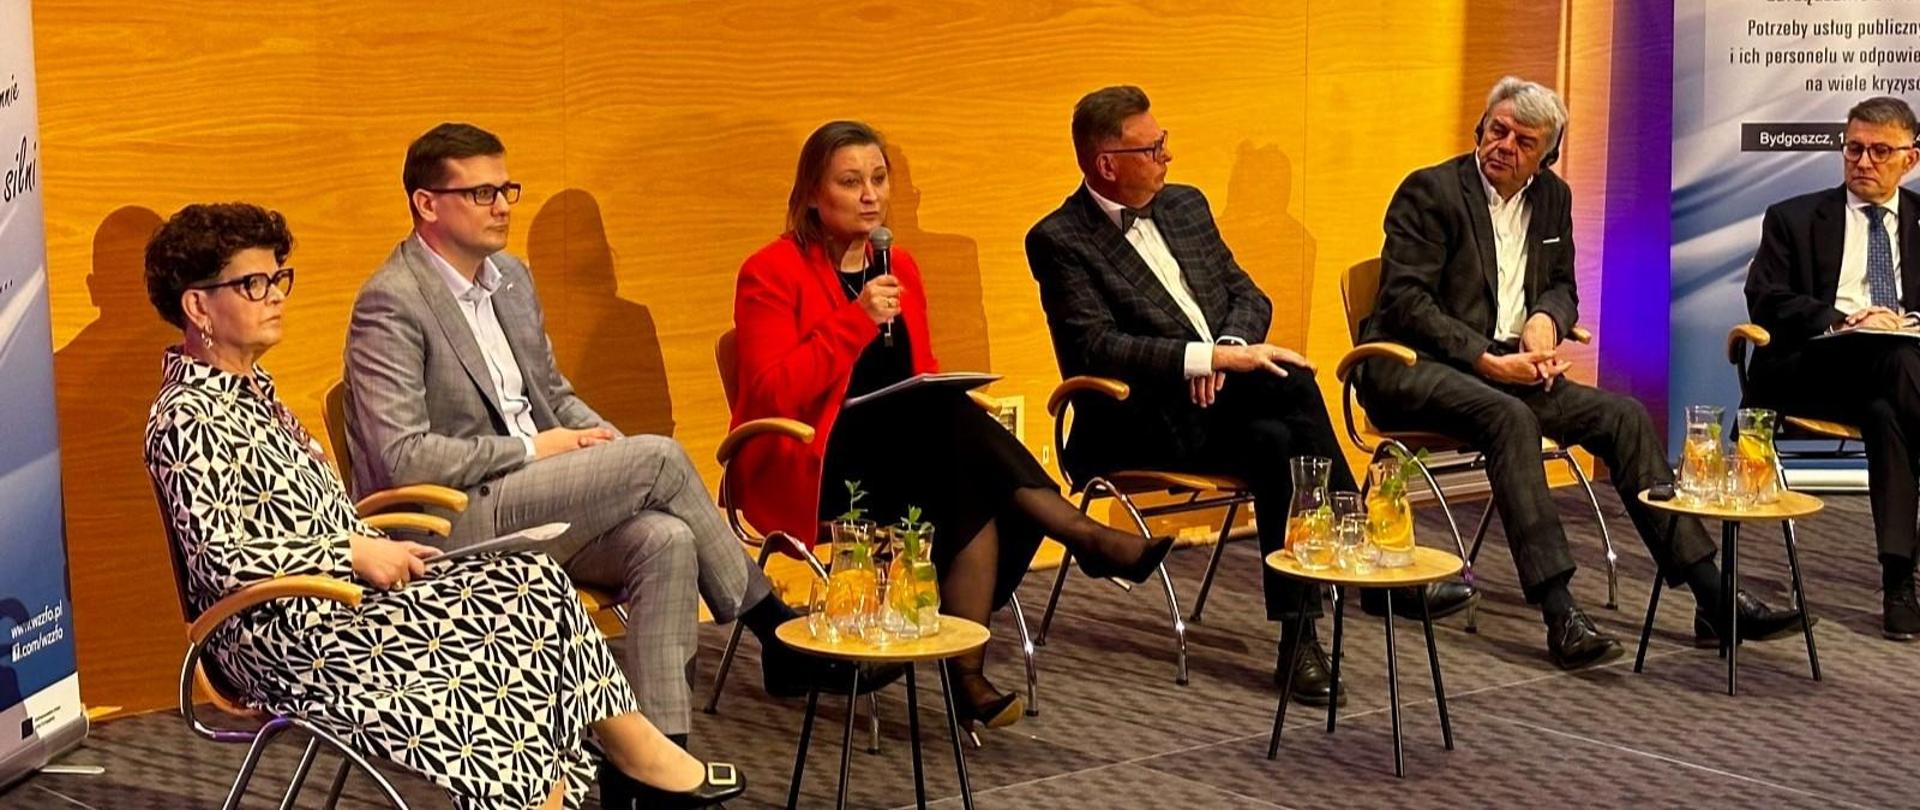 Na scenie na krzesłach siedzi sześć osób, dwie kobiety i czterech mężczyzn wśród nich wiceminister Piechna-Więckiewicz, która mówi do mikrofonu